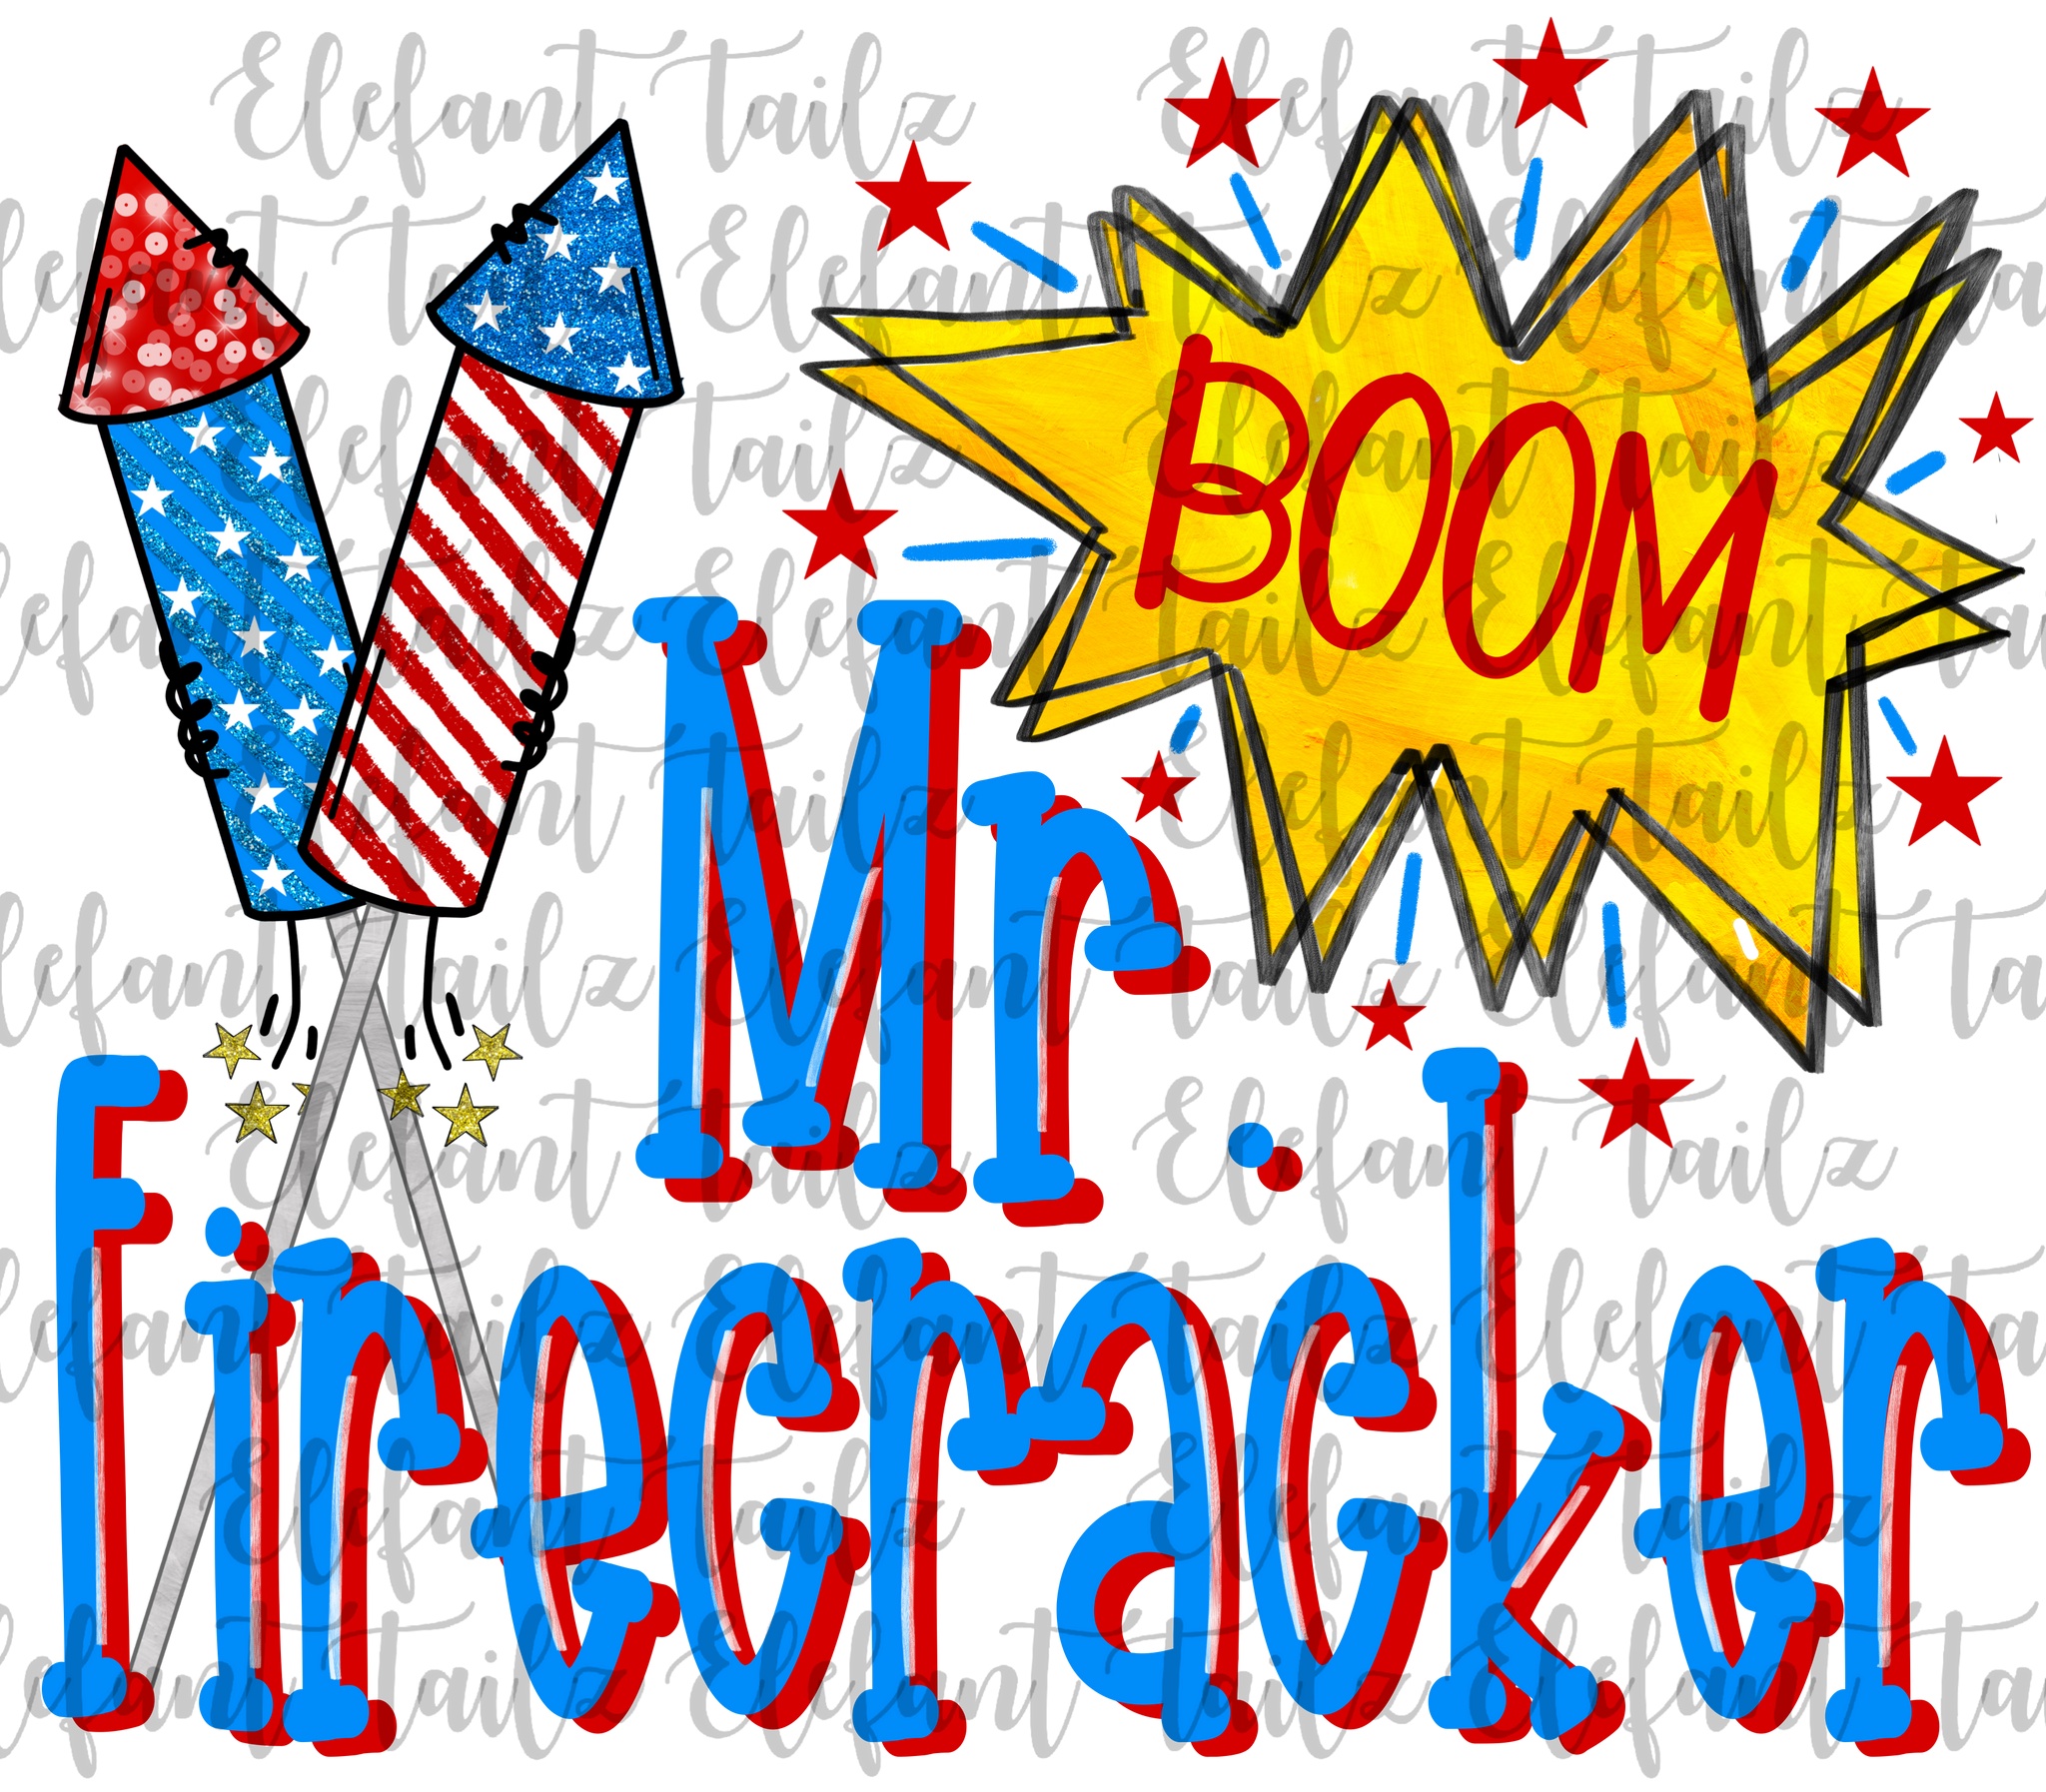 Mr. Firecracker